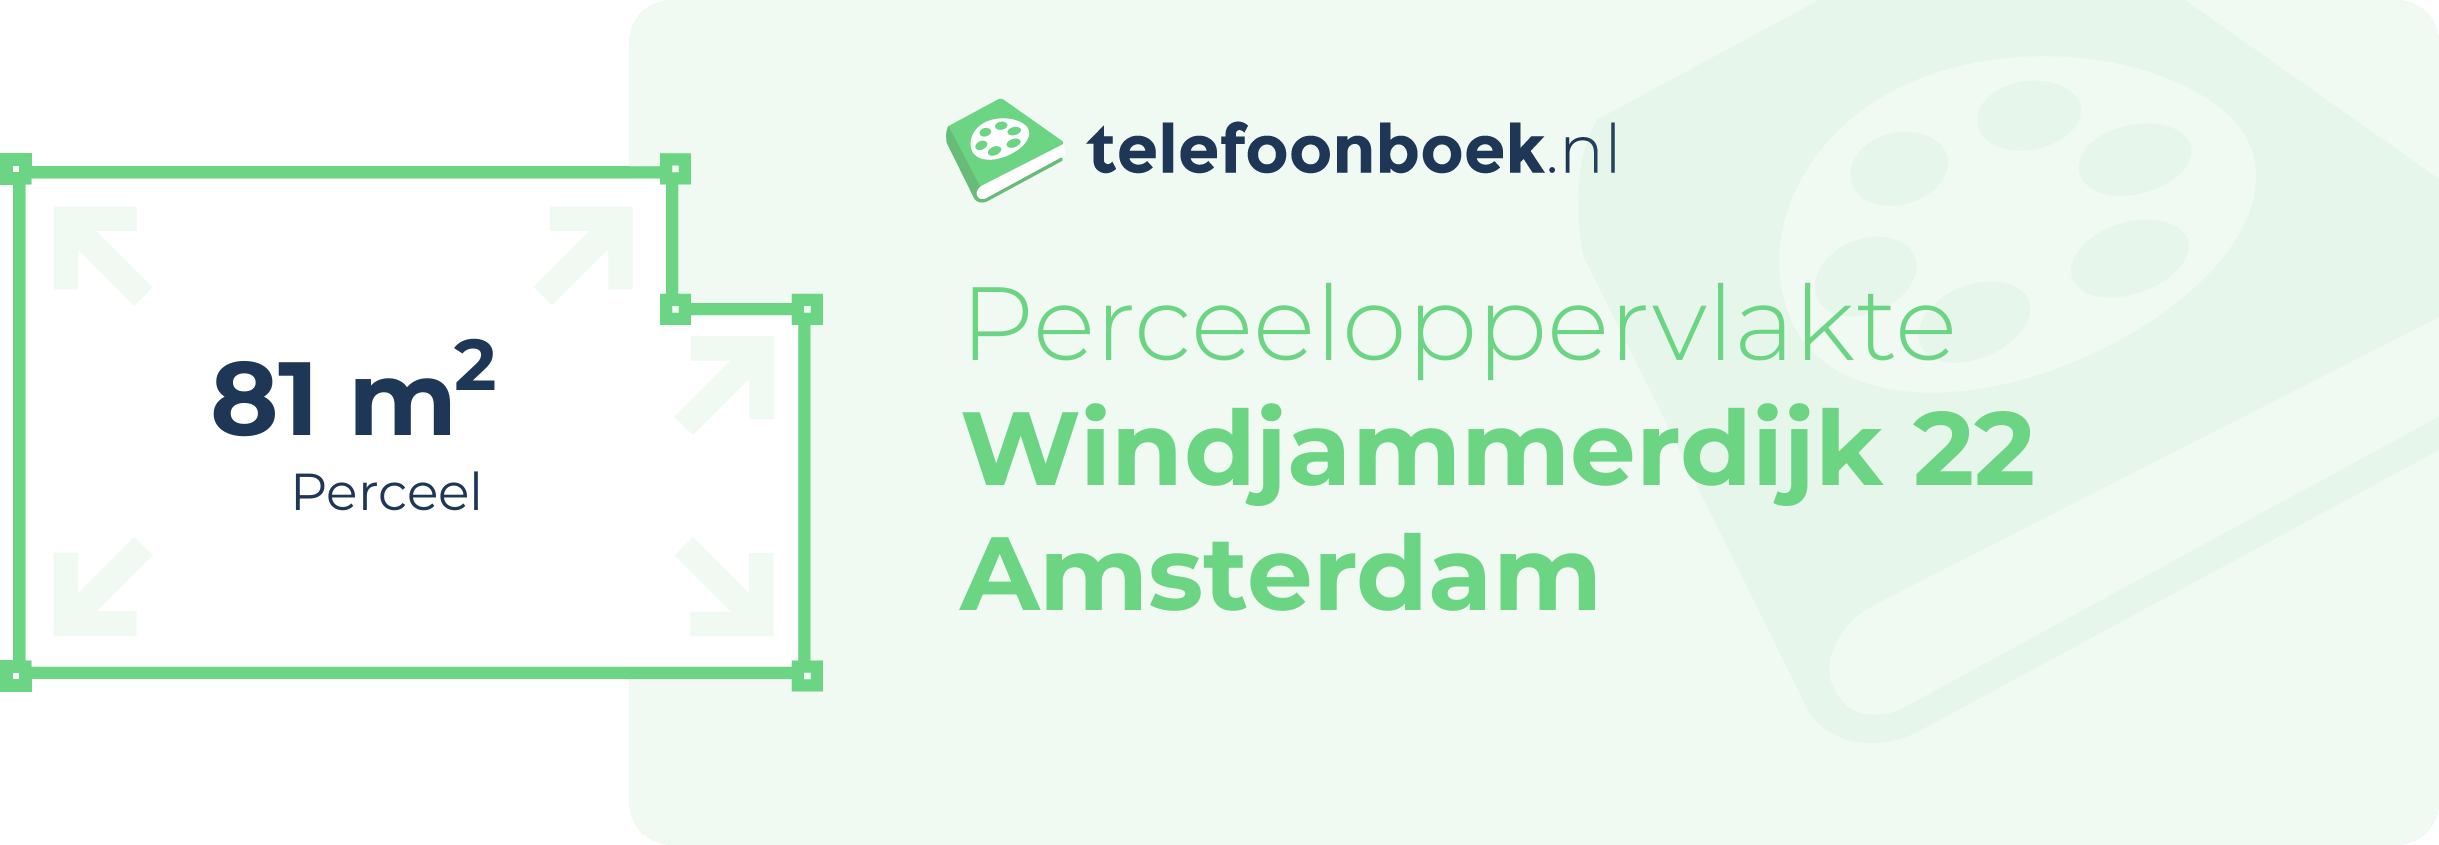 Perceeloppervlakte Windjammerdijk 22 Amsterdam